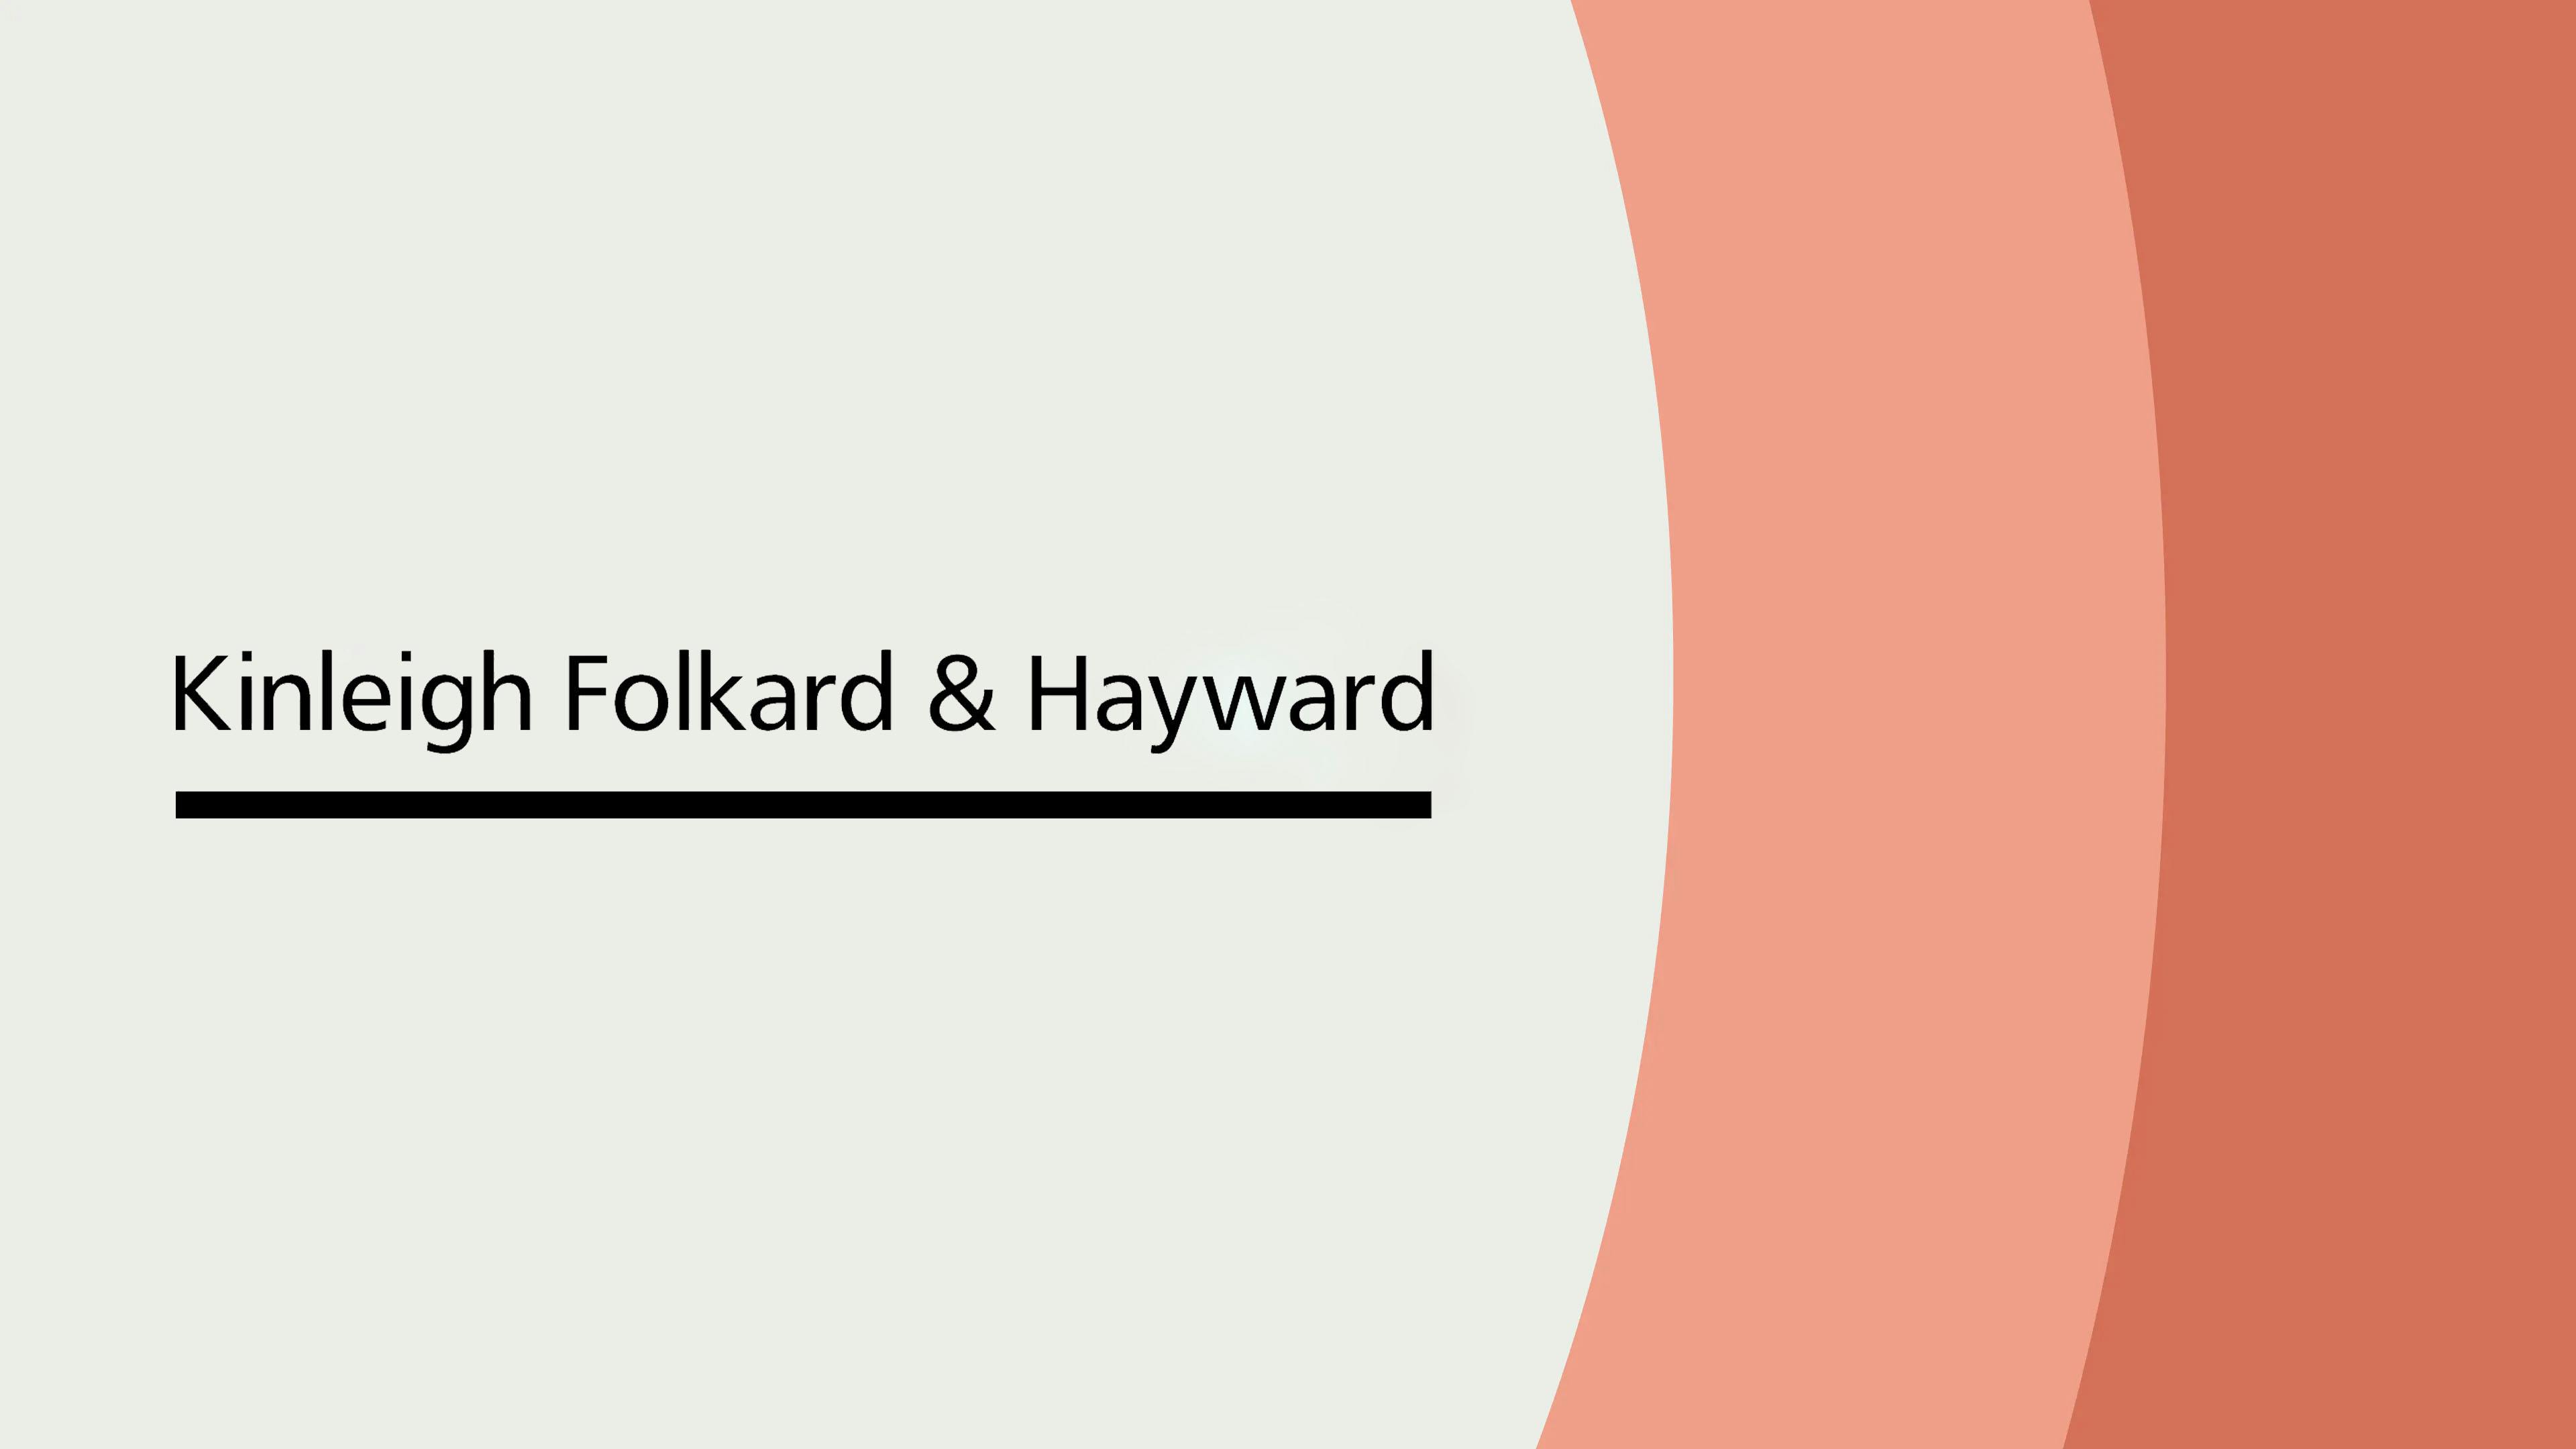 Kinleigh Folkard & Hayward logo on a Thirdfort background